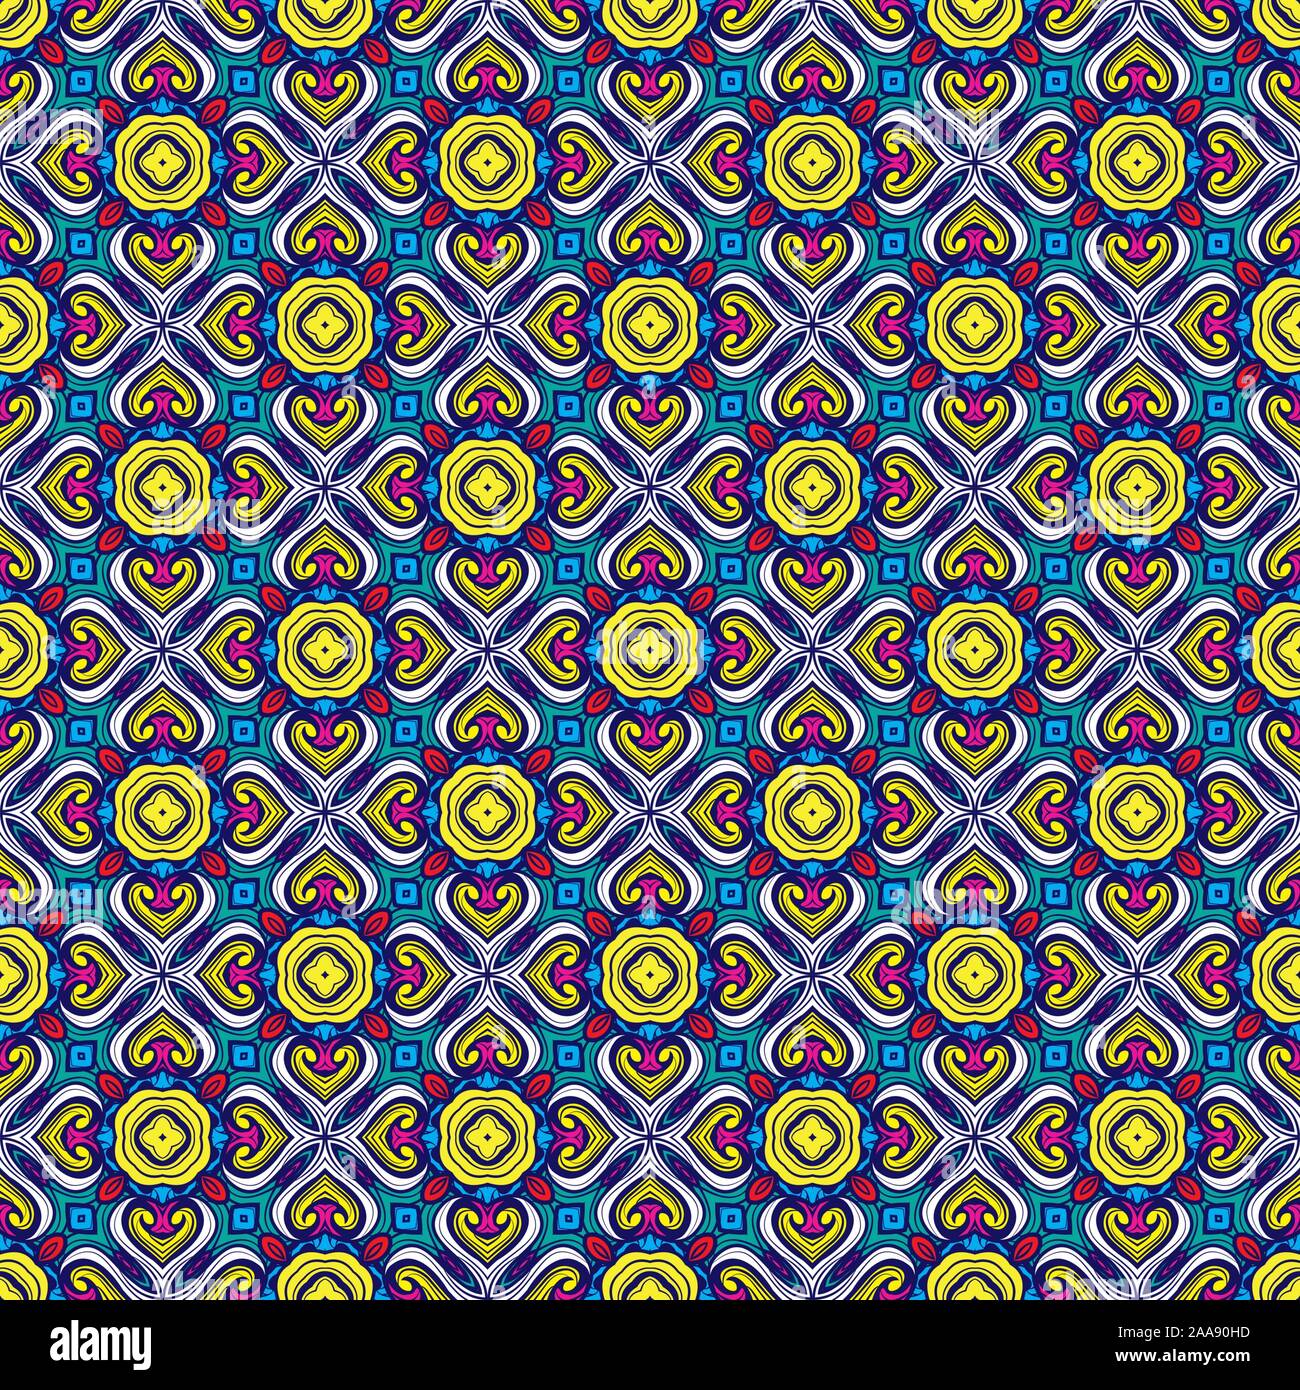 Seamless Abstract Pattern Arabesque fond traditionnel géométrique. L'arabe marocain, Portugal, Damas Floral pour tapis, la texture du papier numérique. Banque D'Images